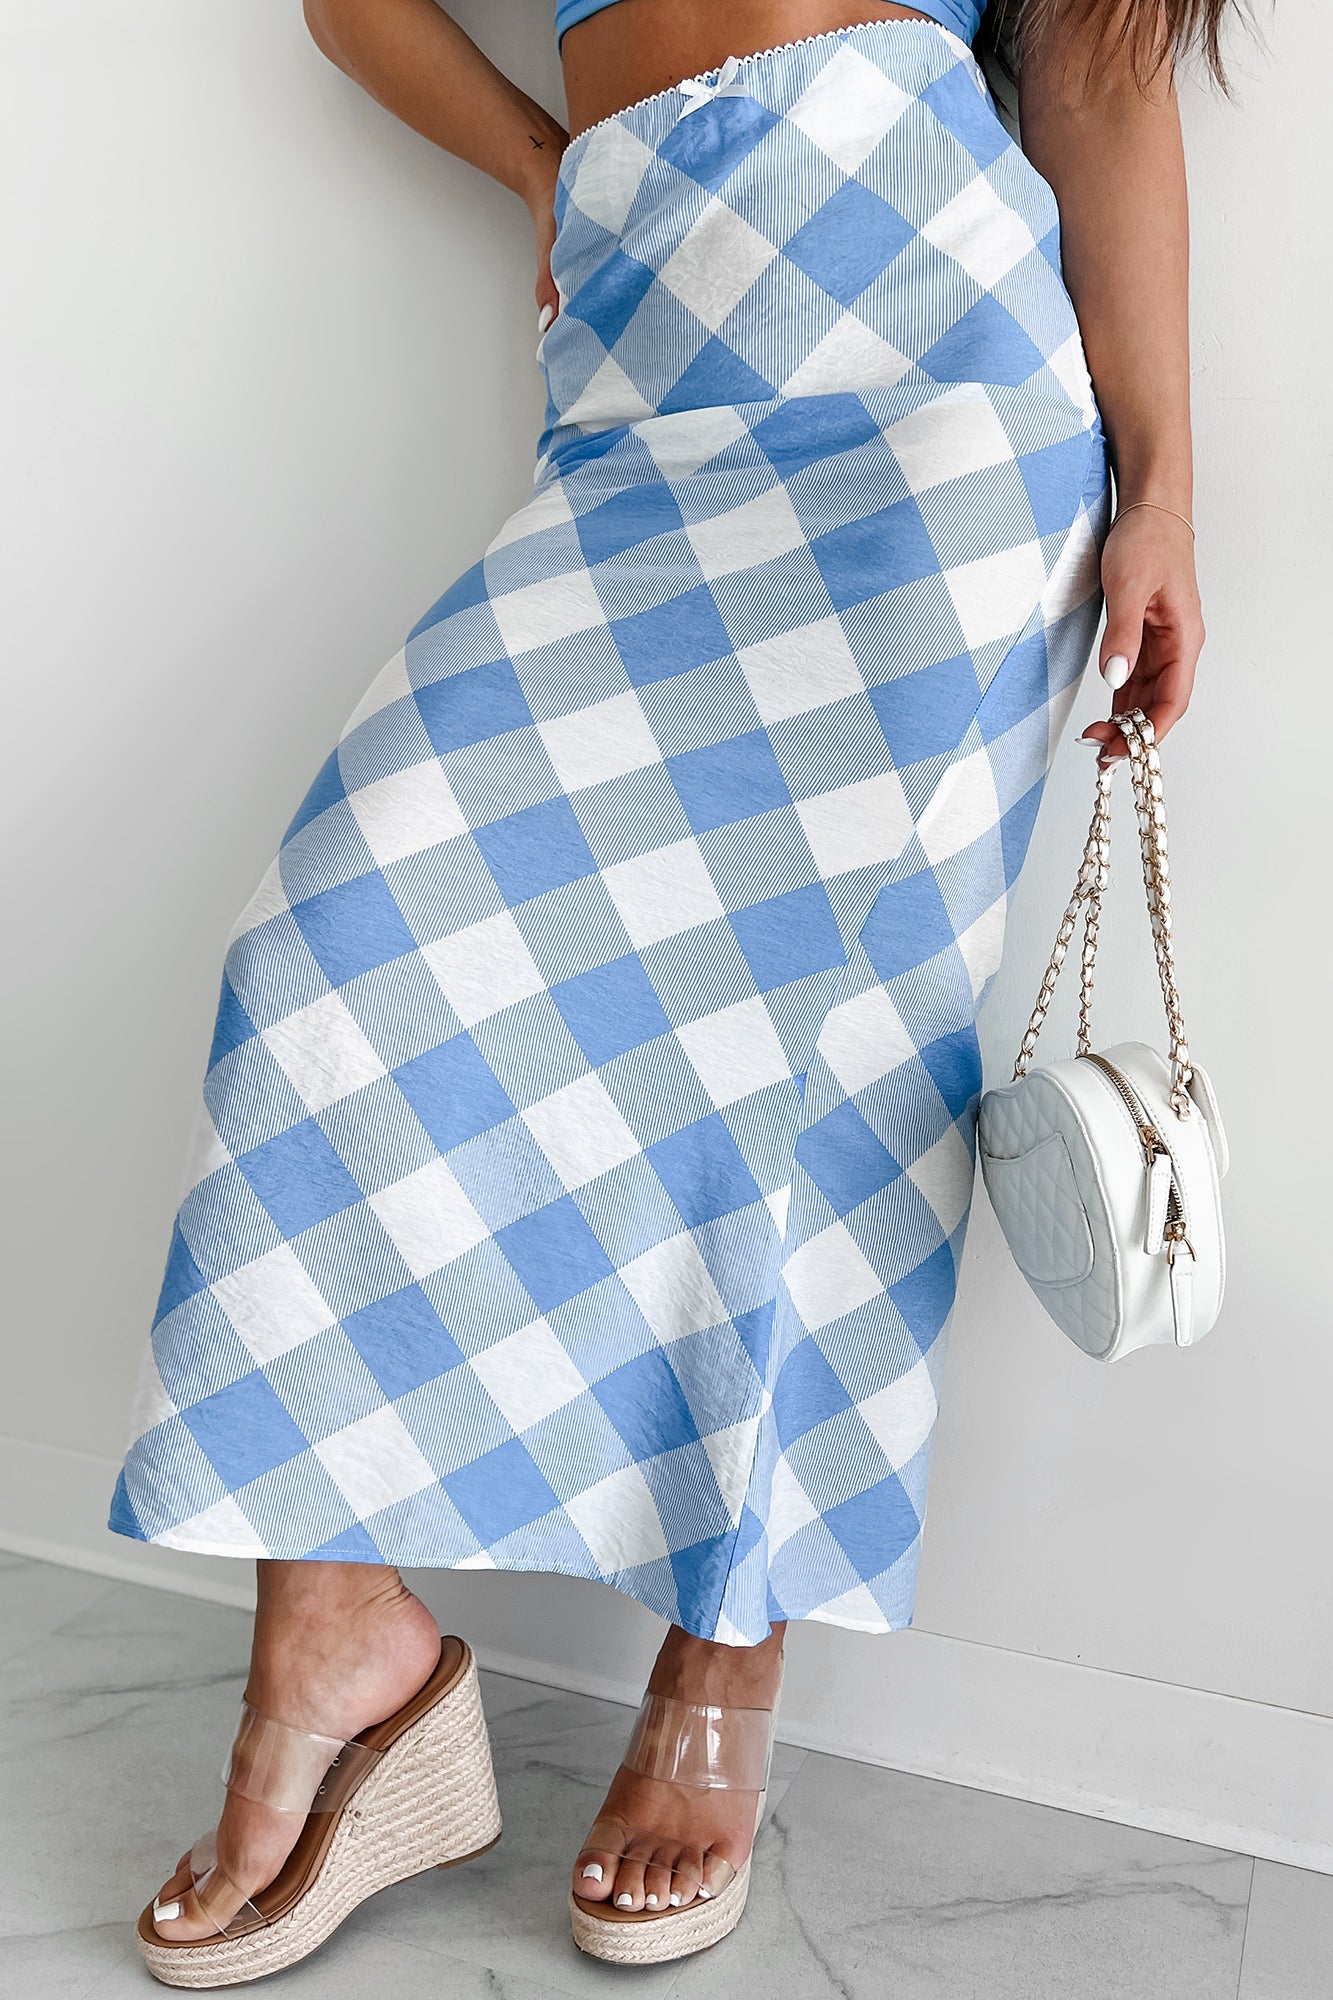 Campus Stroll Plaid Maxi Skirt (Blue/White) - NanaMacs